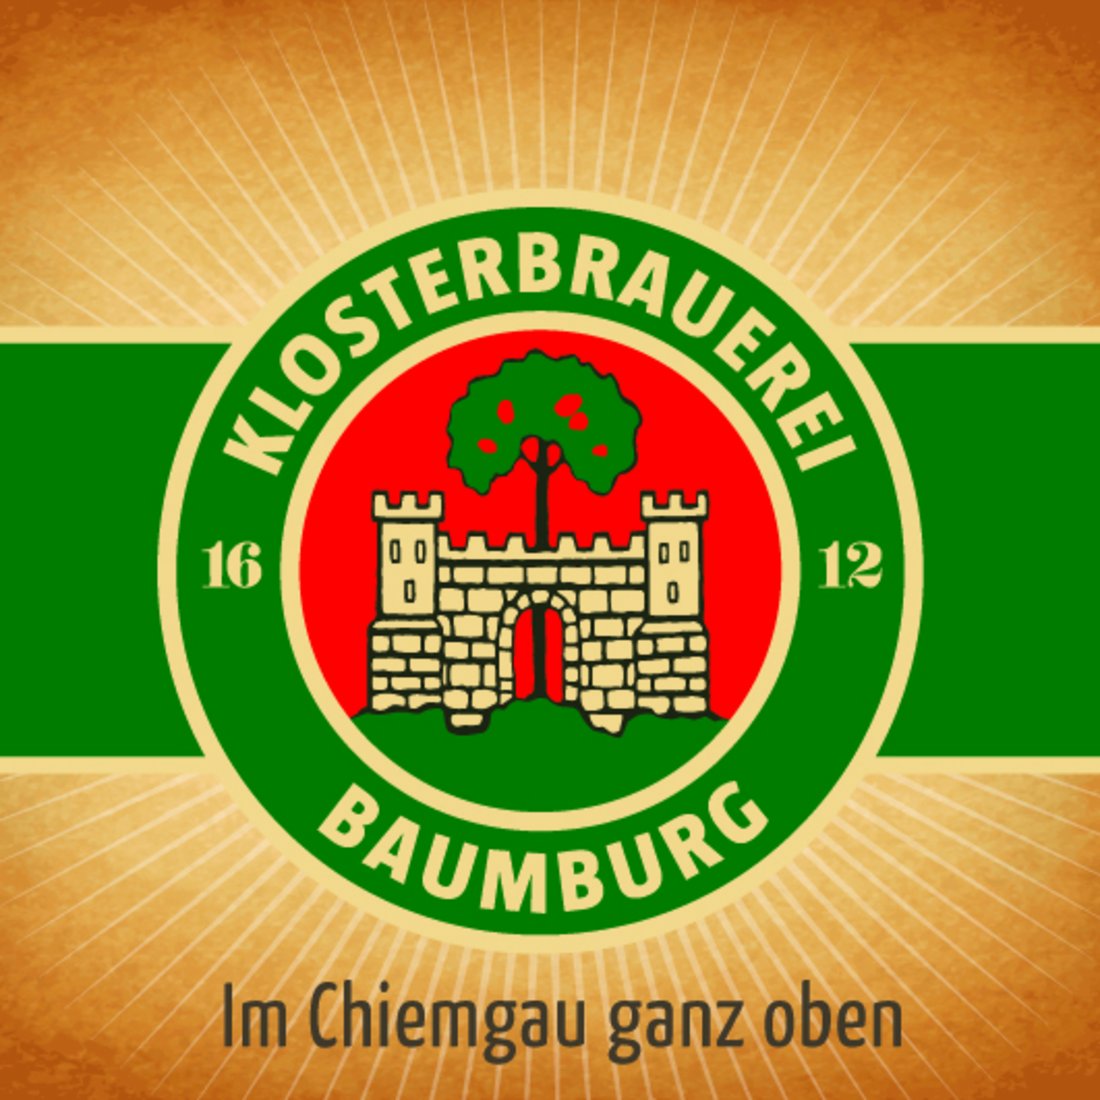 Klosterbrauerei Baumburg GmbH & Co. KG